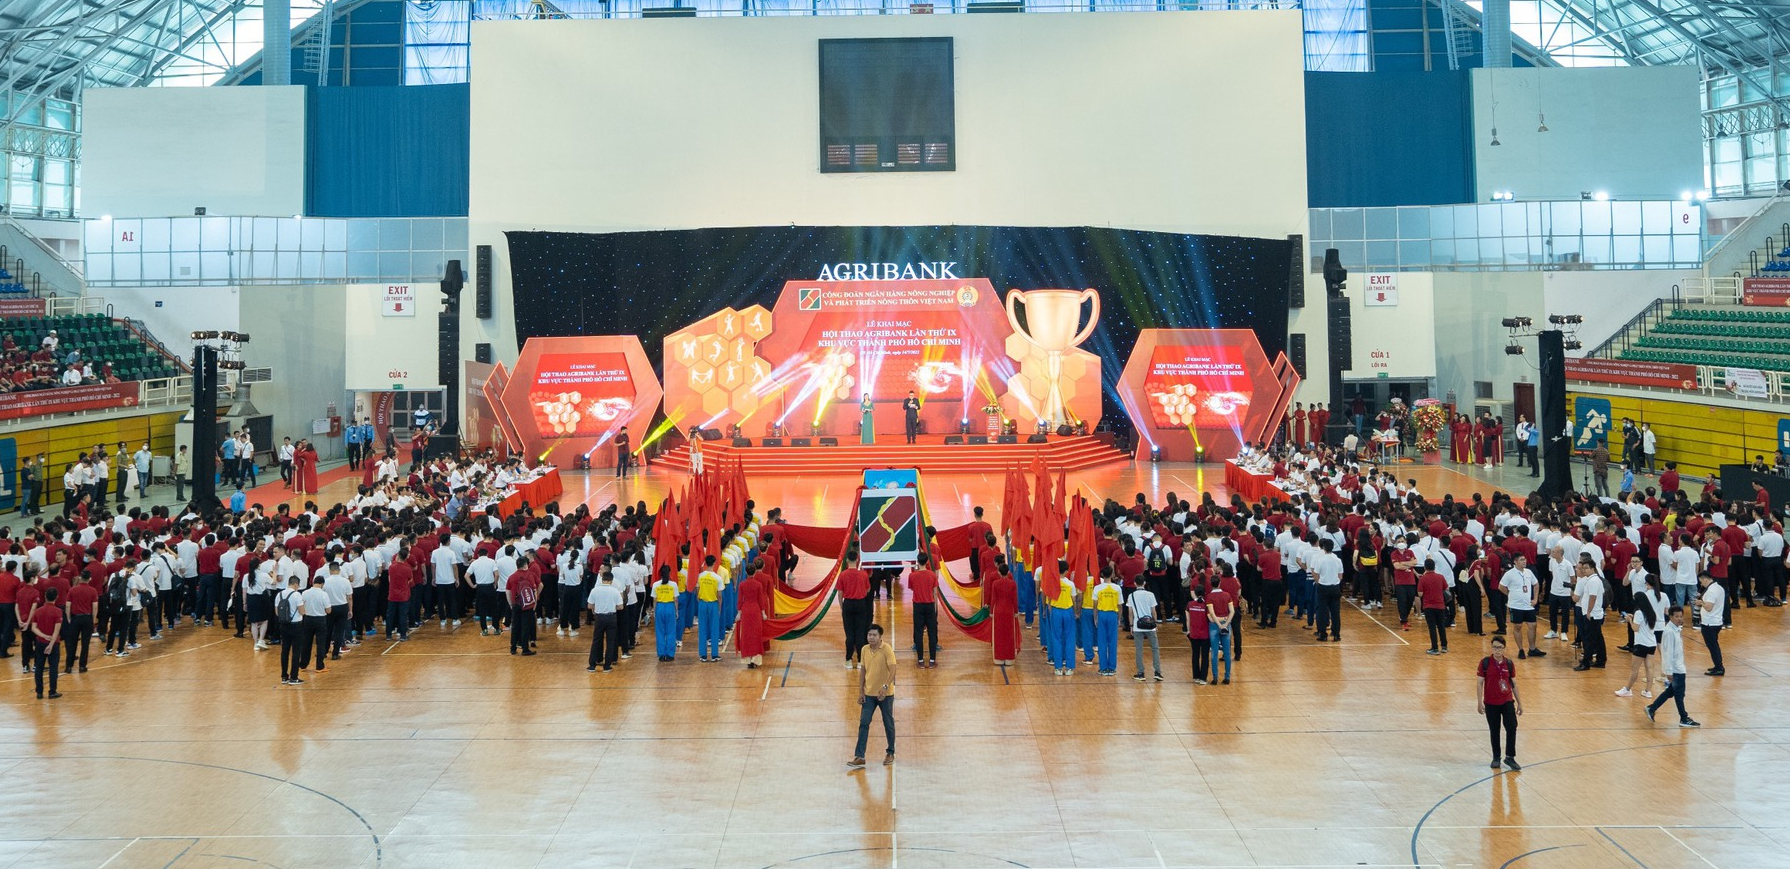 Tưng bừng Lễ Khai mạc Hội thao Agribank lần thứ IX năm 2022 khu vực TP.HCM - Ảnh 2.